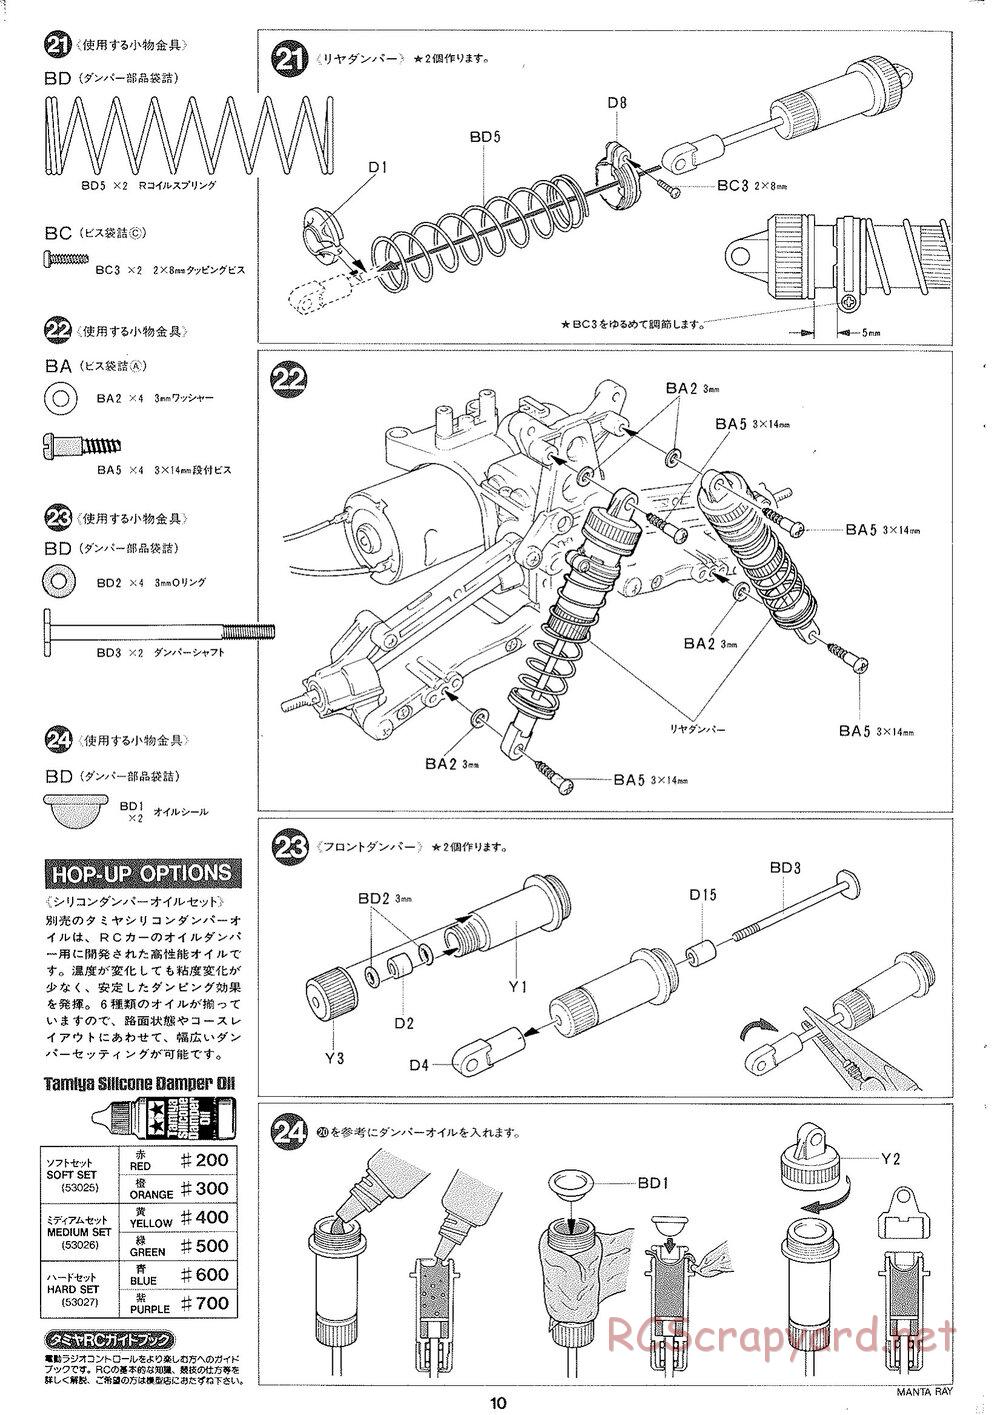 Tamiya - Manta Ray 2005 - DF-01 Chassis - Manual - Page 11